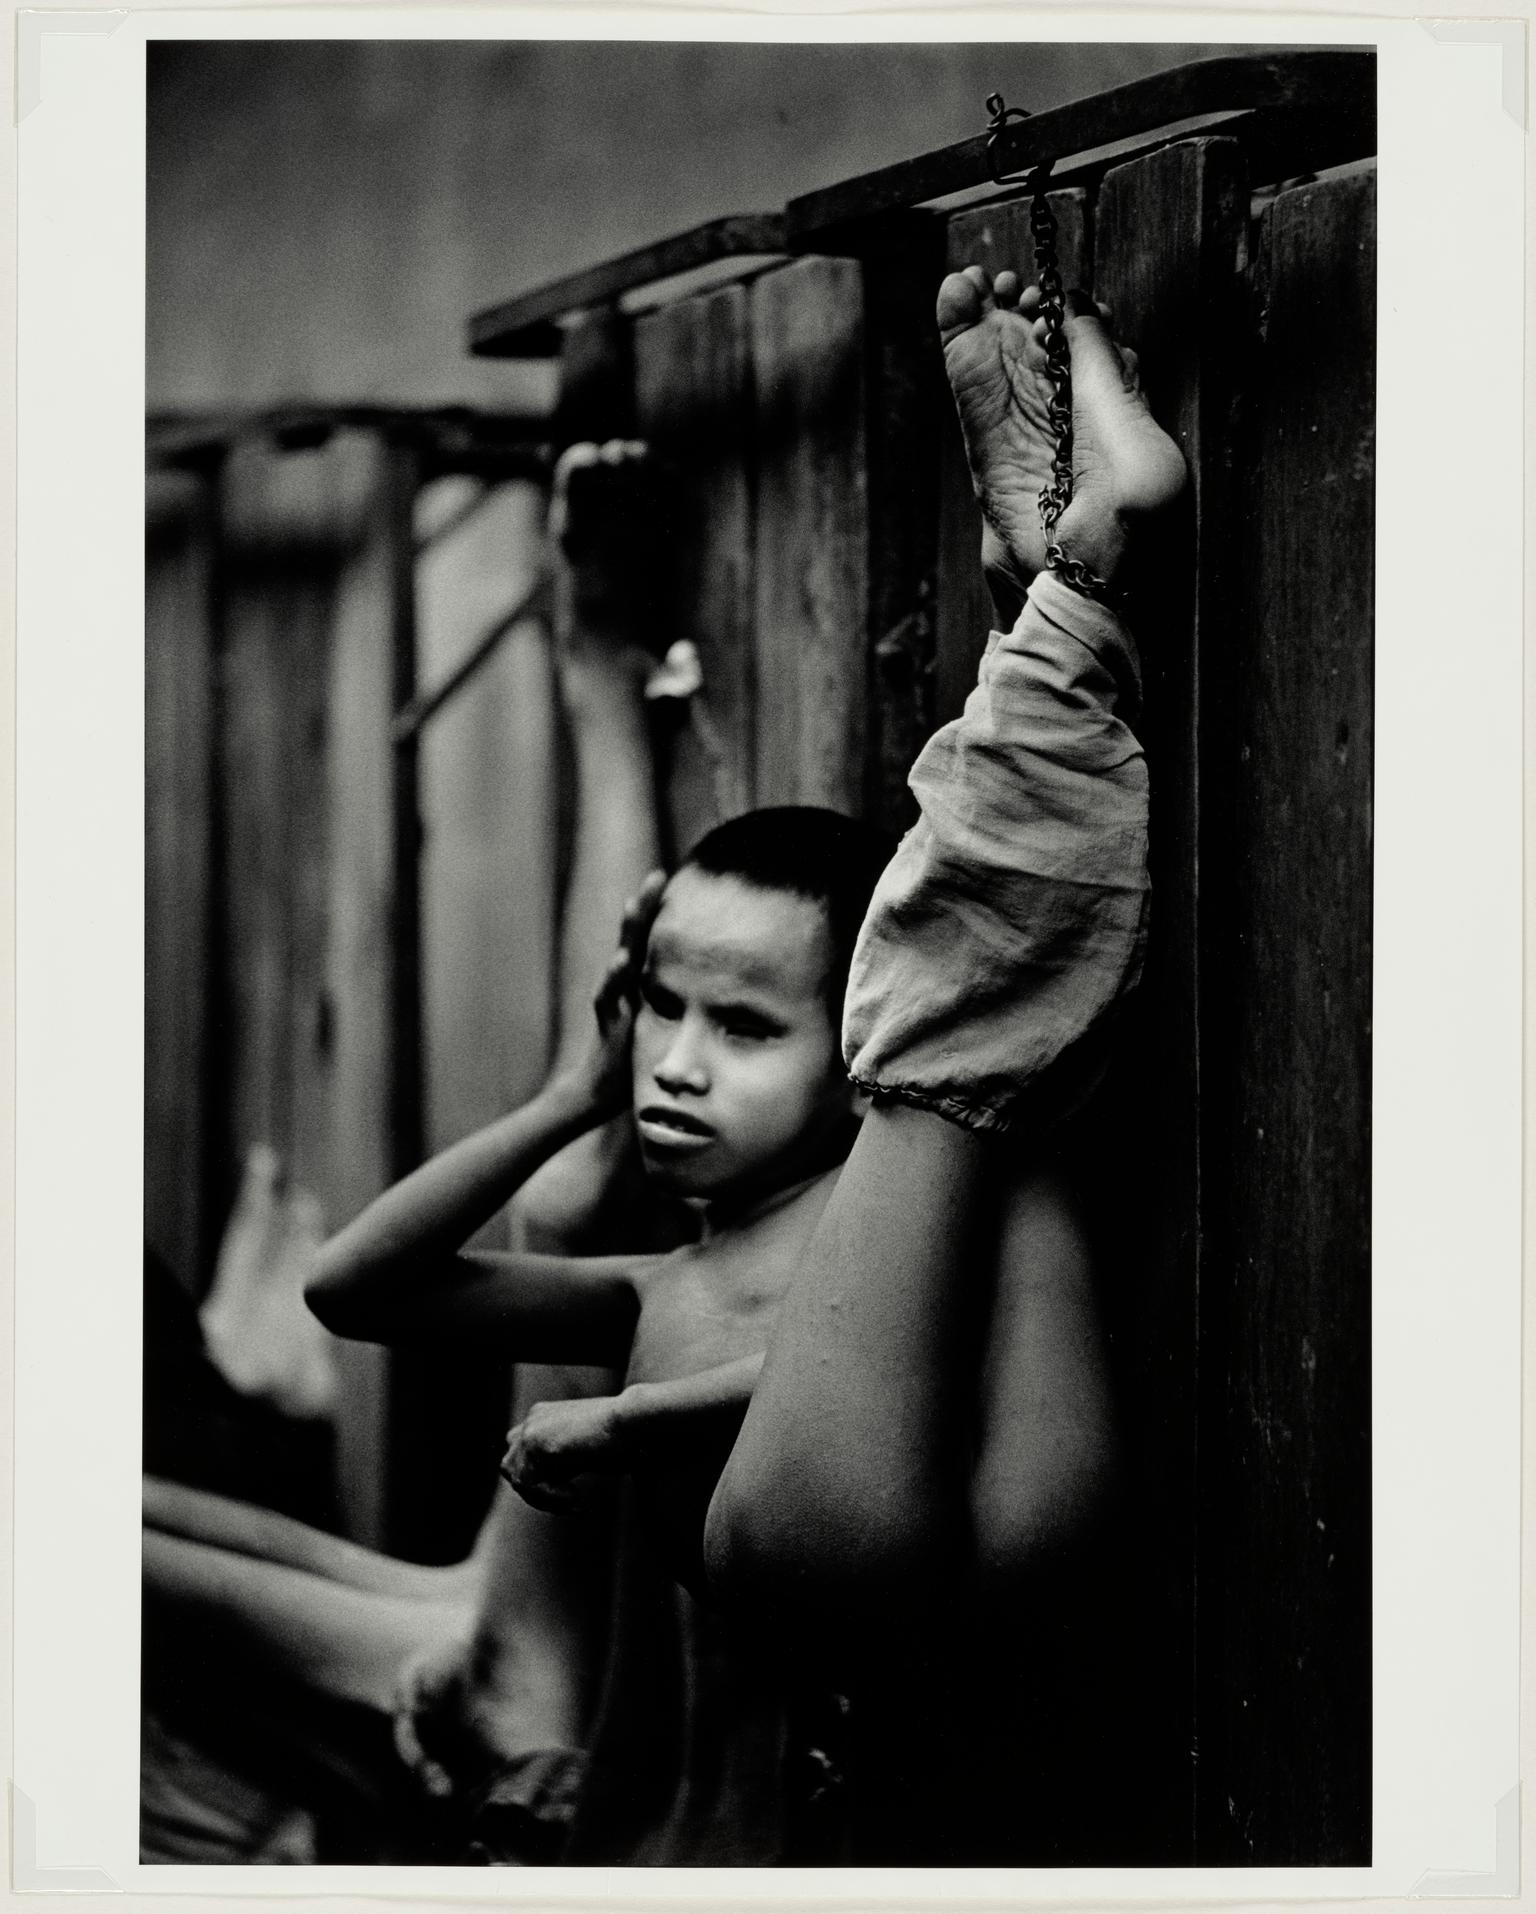 Demented boy, Vietnam, 1970